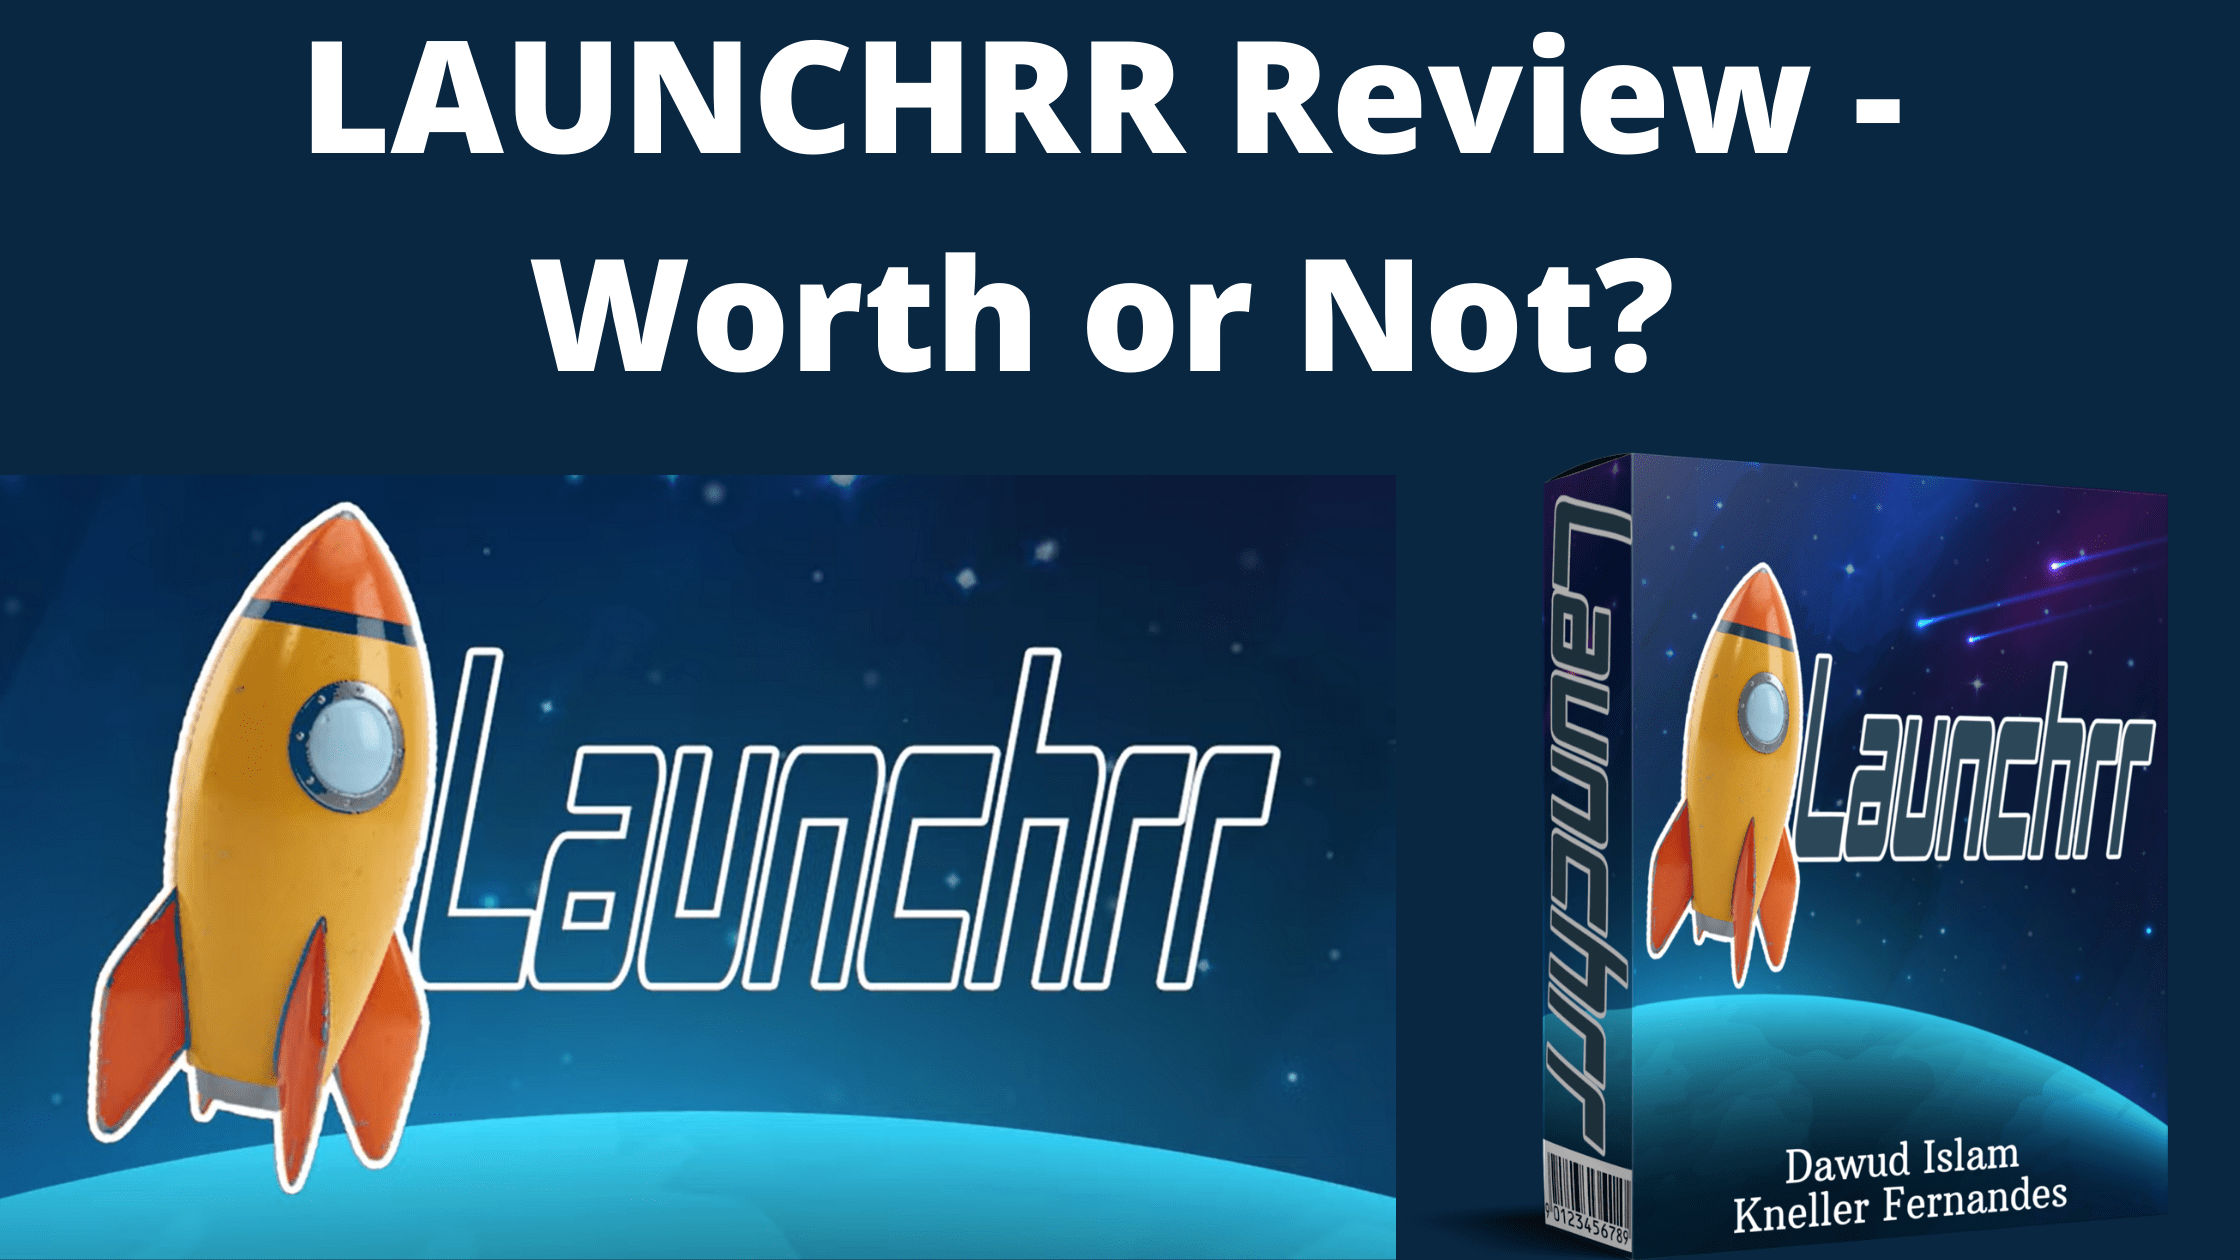 LAUNCHRR Review